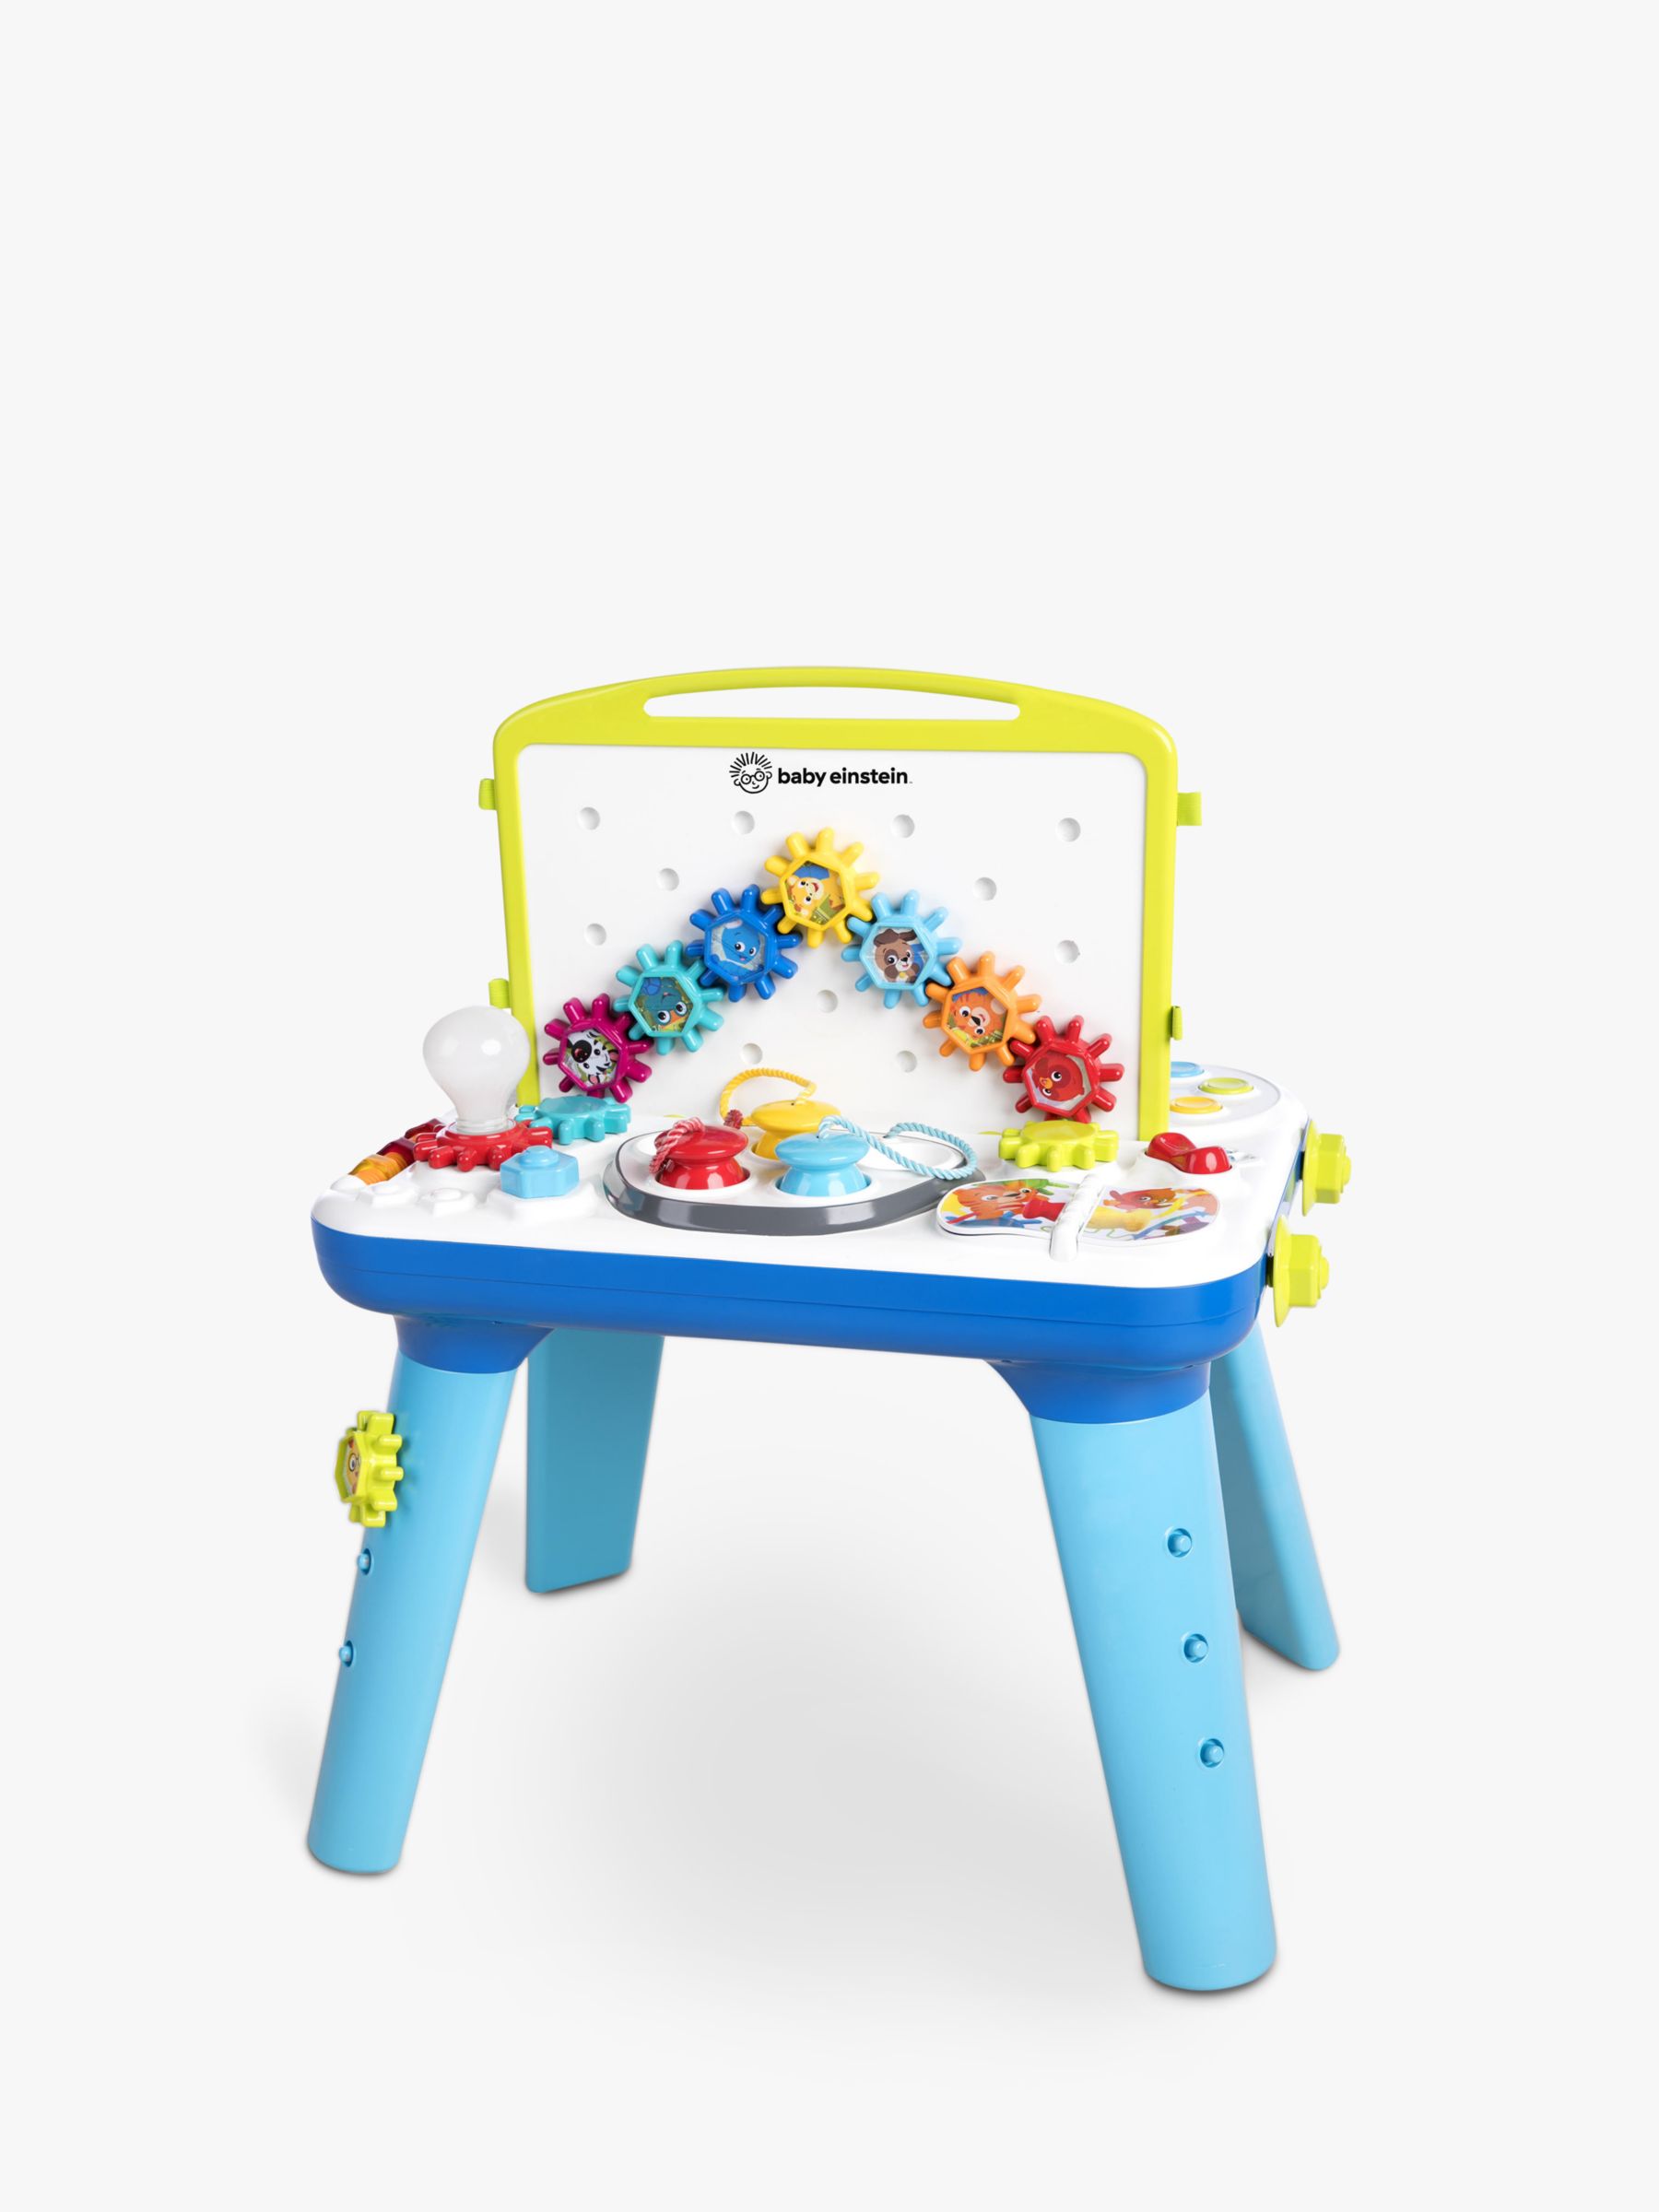 Baby Einstein Curiosity Table Activity Station Toy